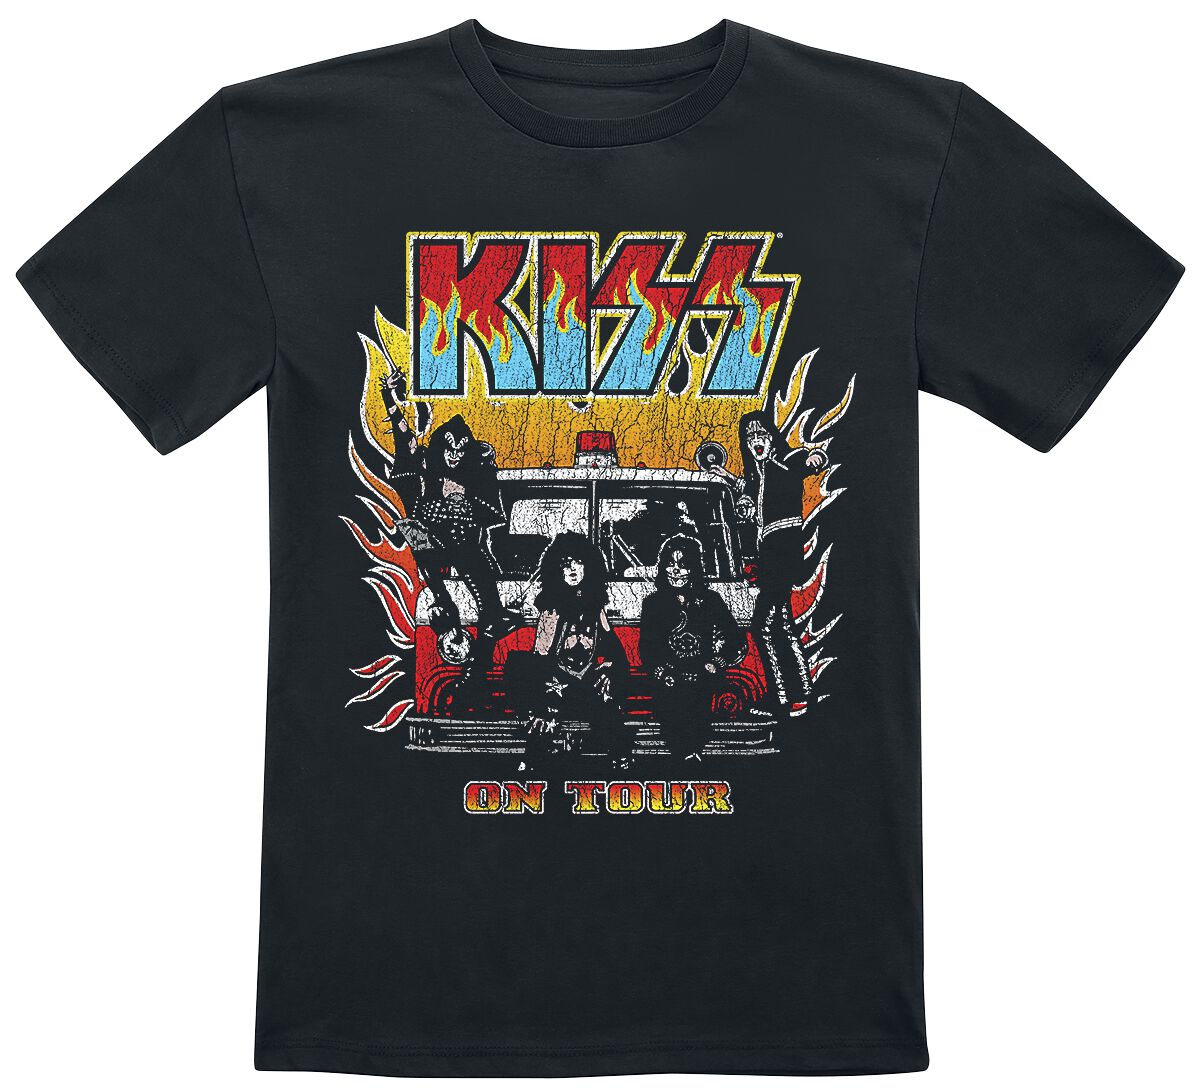 Kiss T-Shirt für Kinder - Kids - On Fire - für Mädchen & Jungen - schwarz  - Lizenziertes Merchandise!